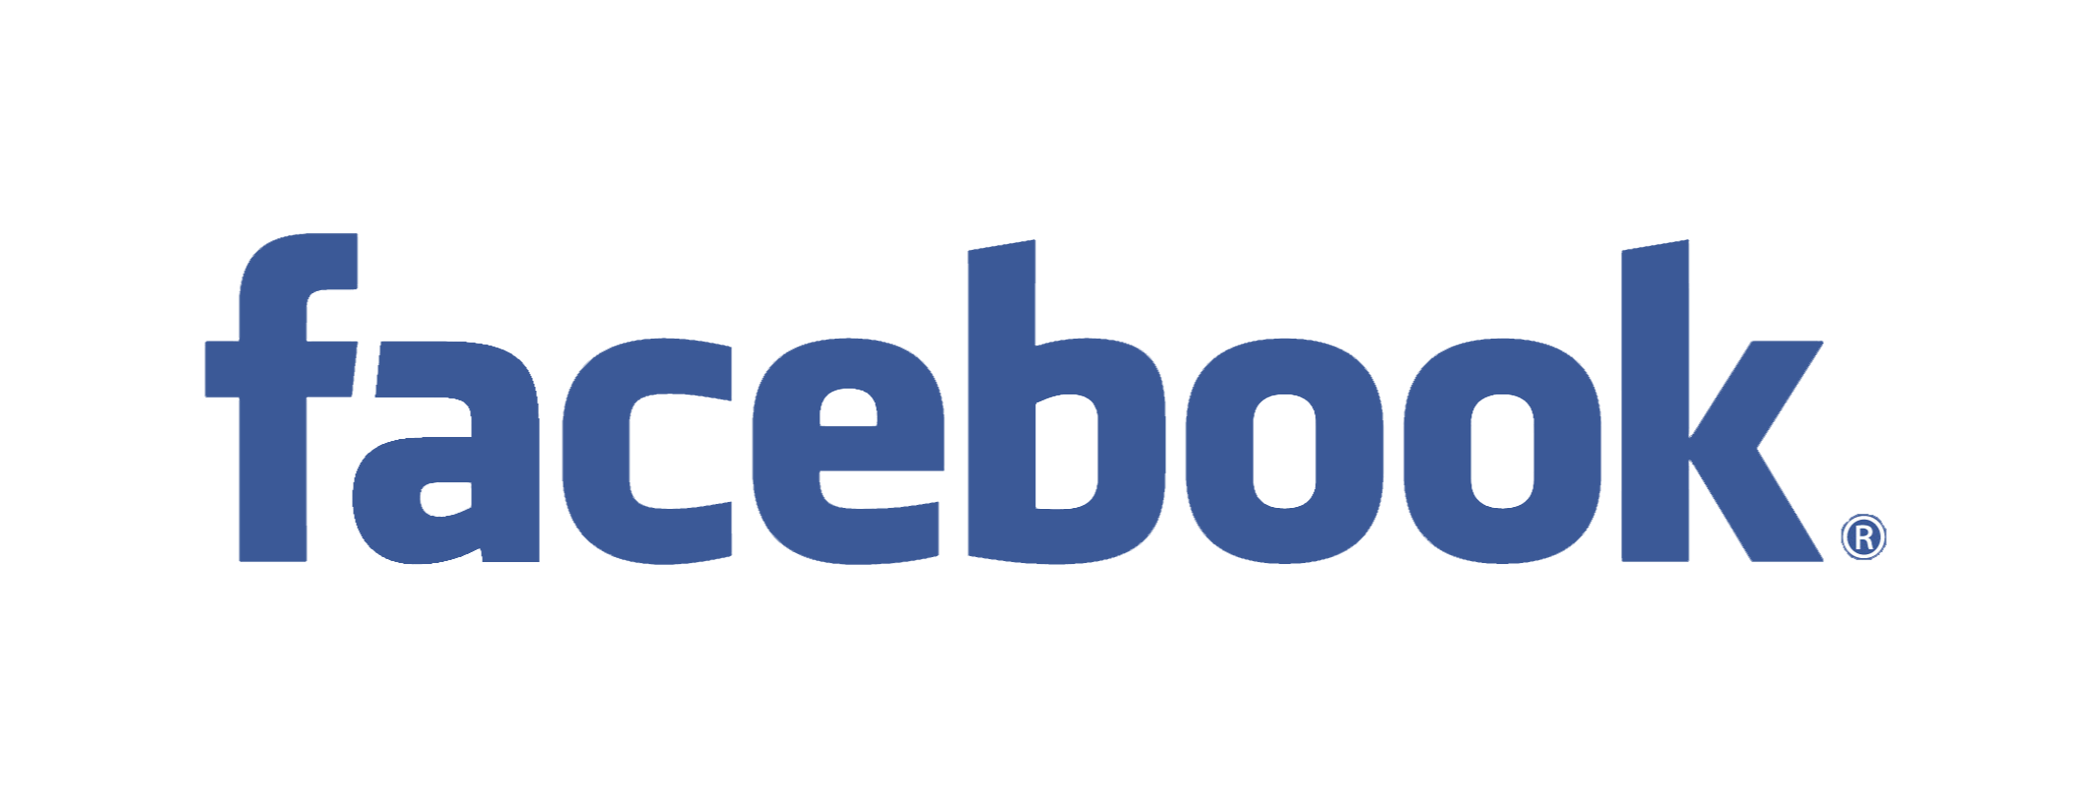 F8 Media Messenger Social Facebook Livechat PNG Image